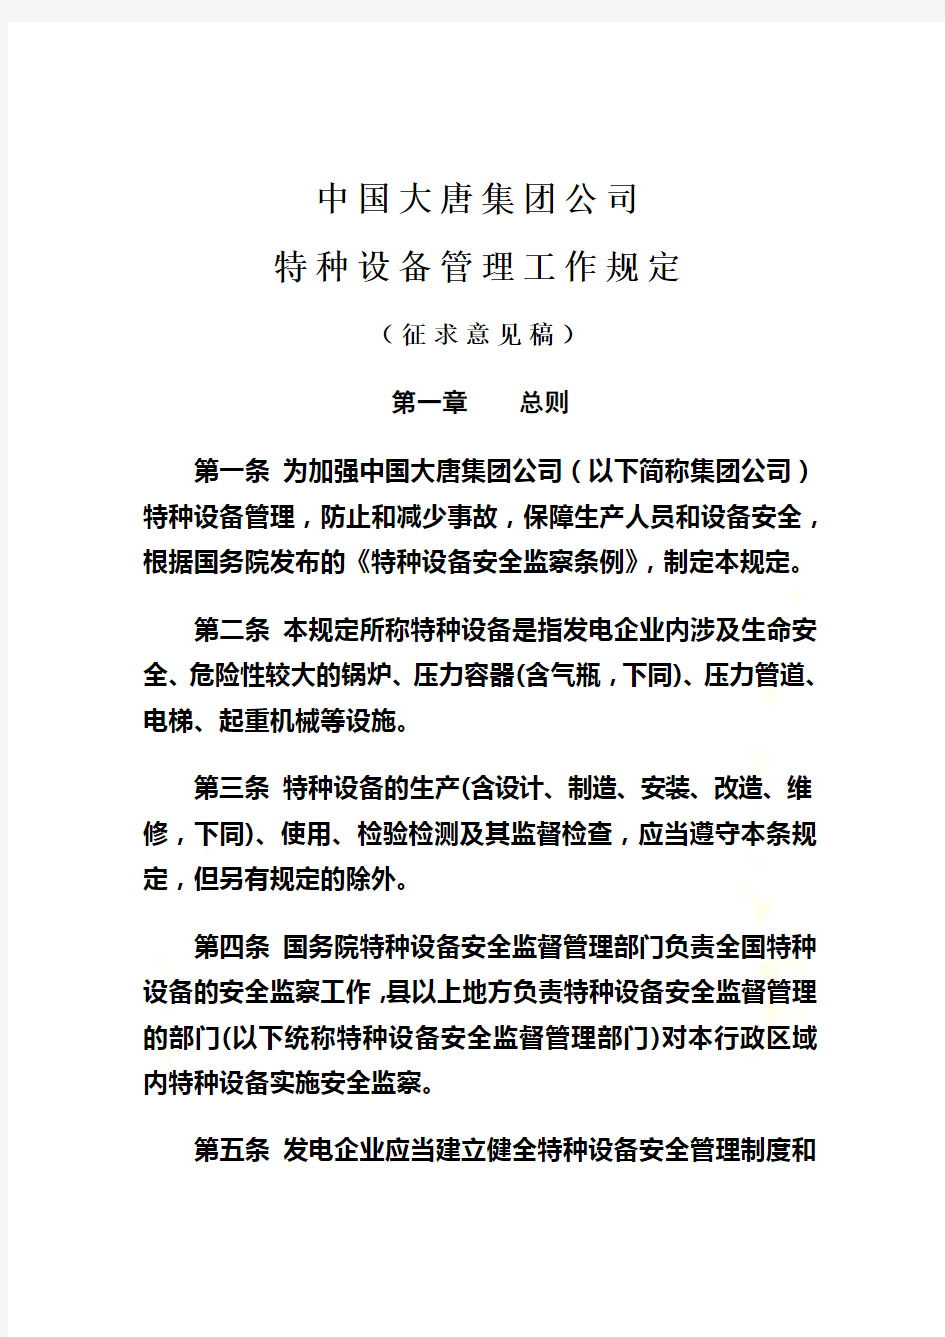 中国大唐集团公司特种设备管理工作规定(征求意见稿)